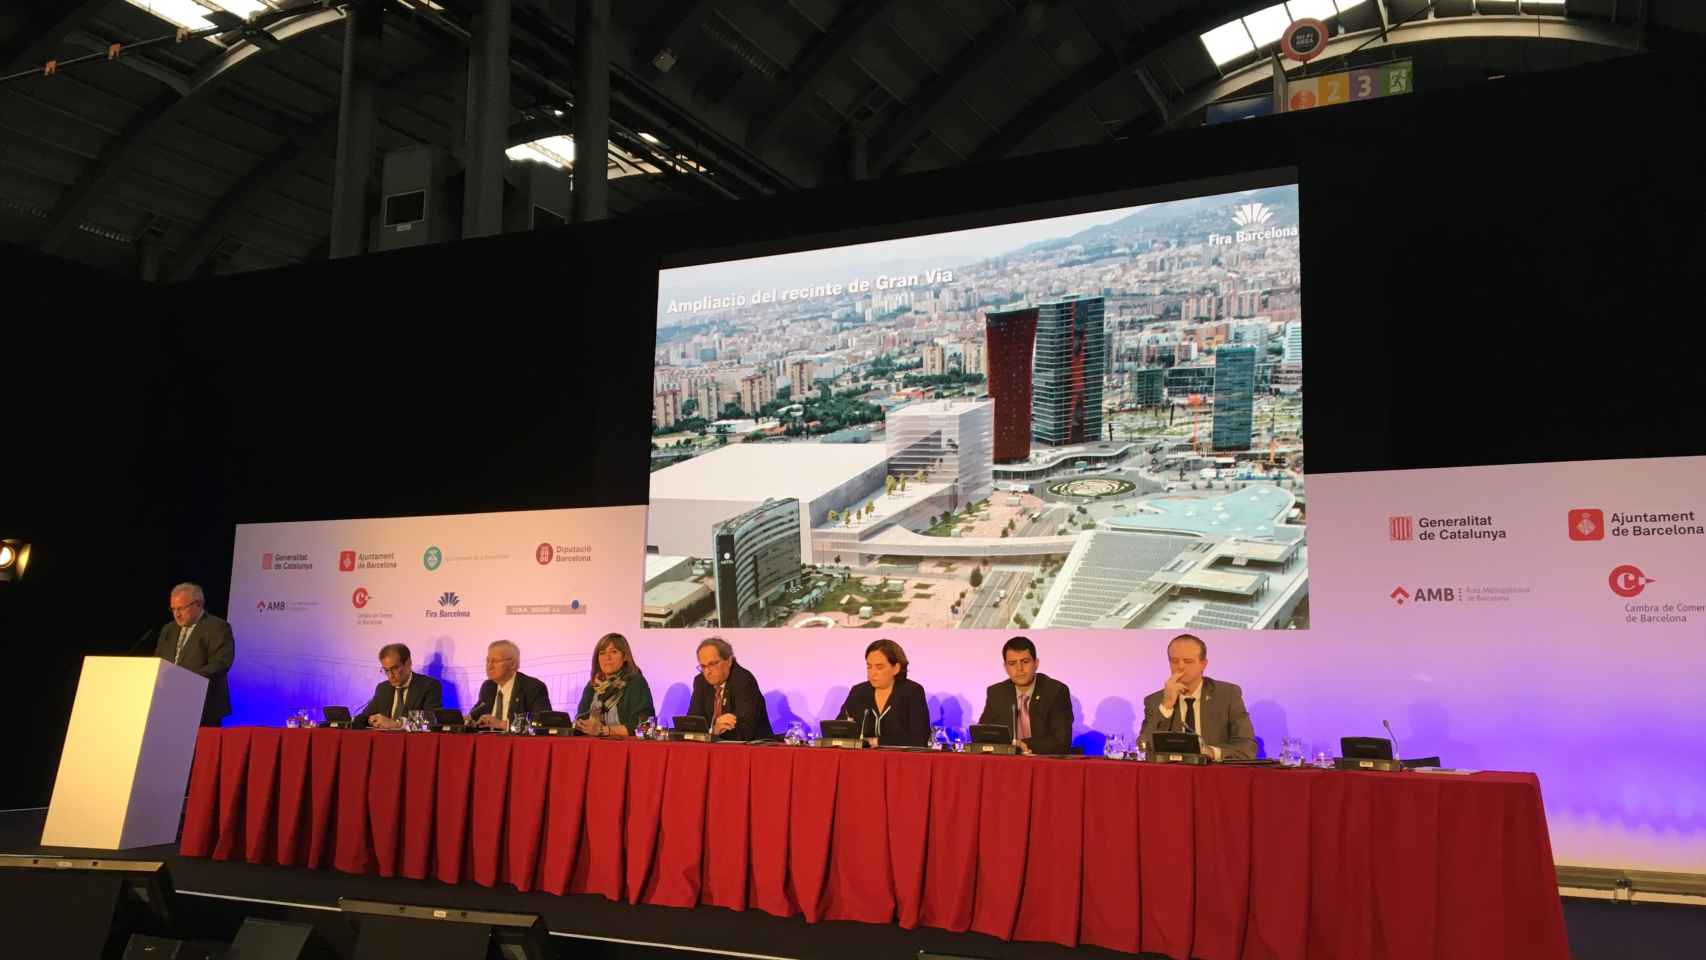 Presentación del proyecto de ampliación de la Fira de Barcelona / P.A.